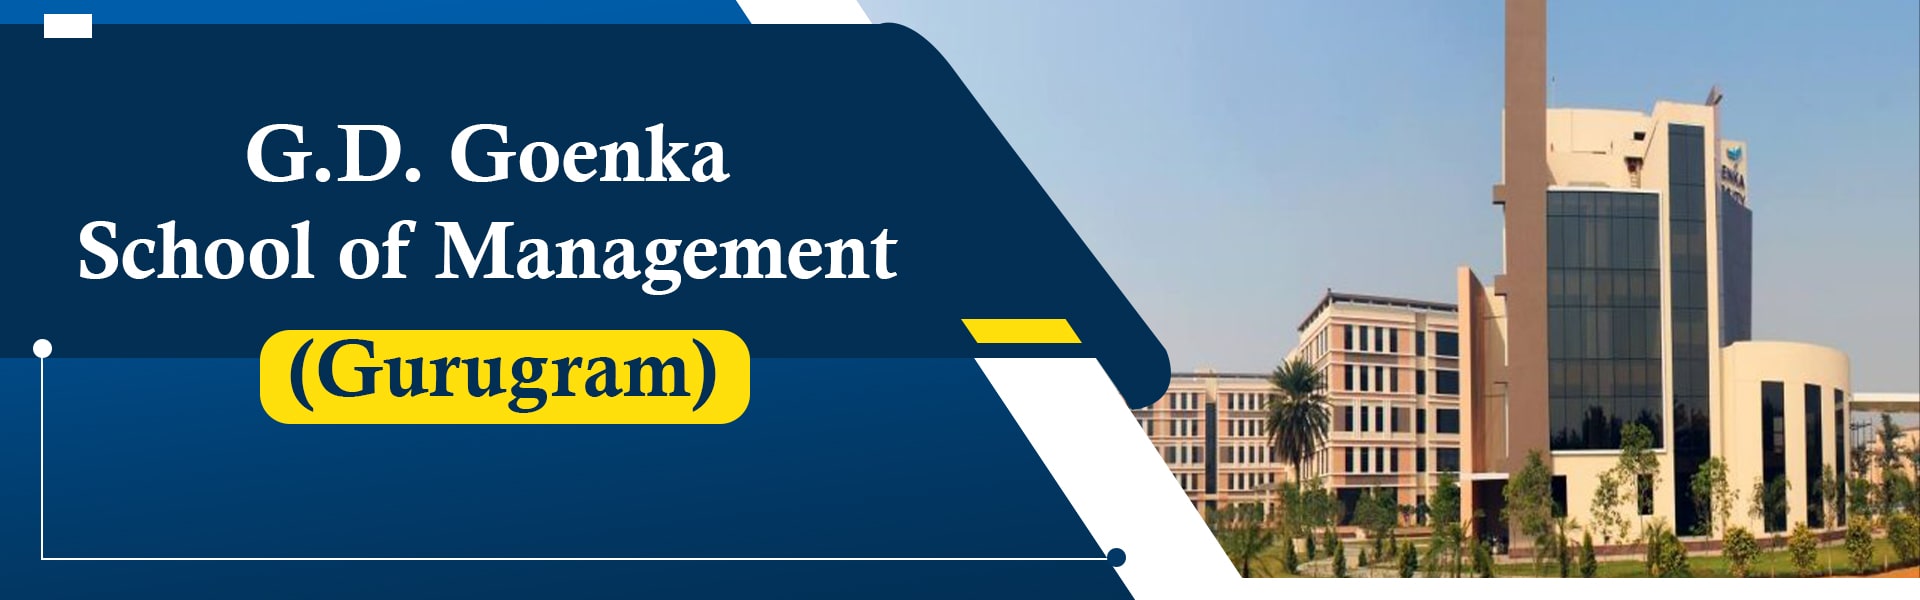 G.D. Goenka School of Management (Gurugram)